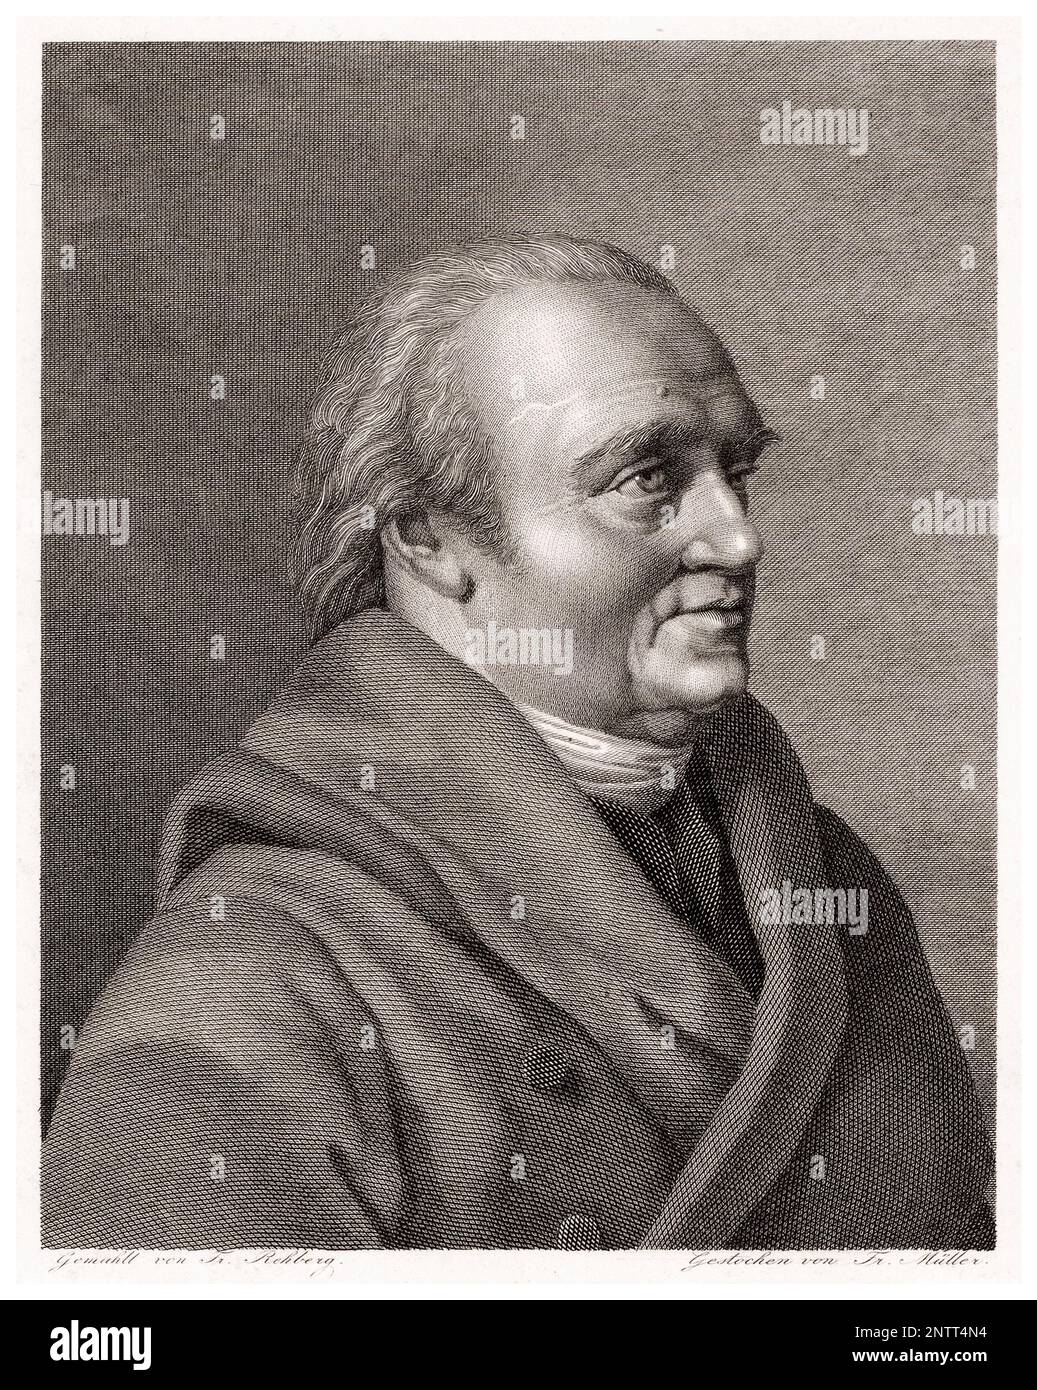 Sir William Herschel (1738-1822), German-born British Astronomer and Composer, portrait engraving by Johann Friedrich Wilhelm Müller, 1792-1816 Stock Photo